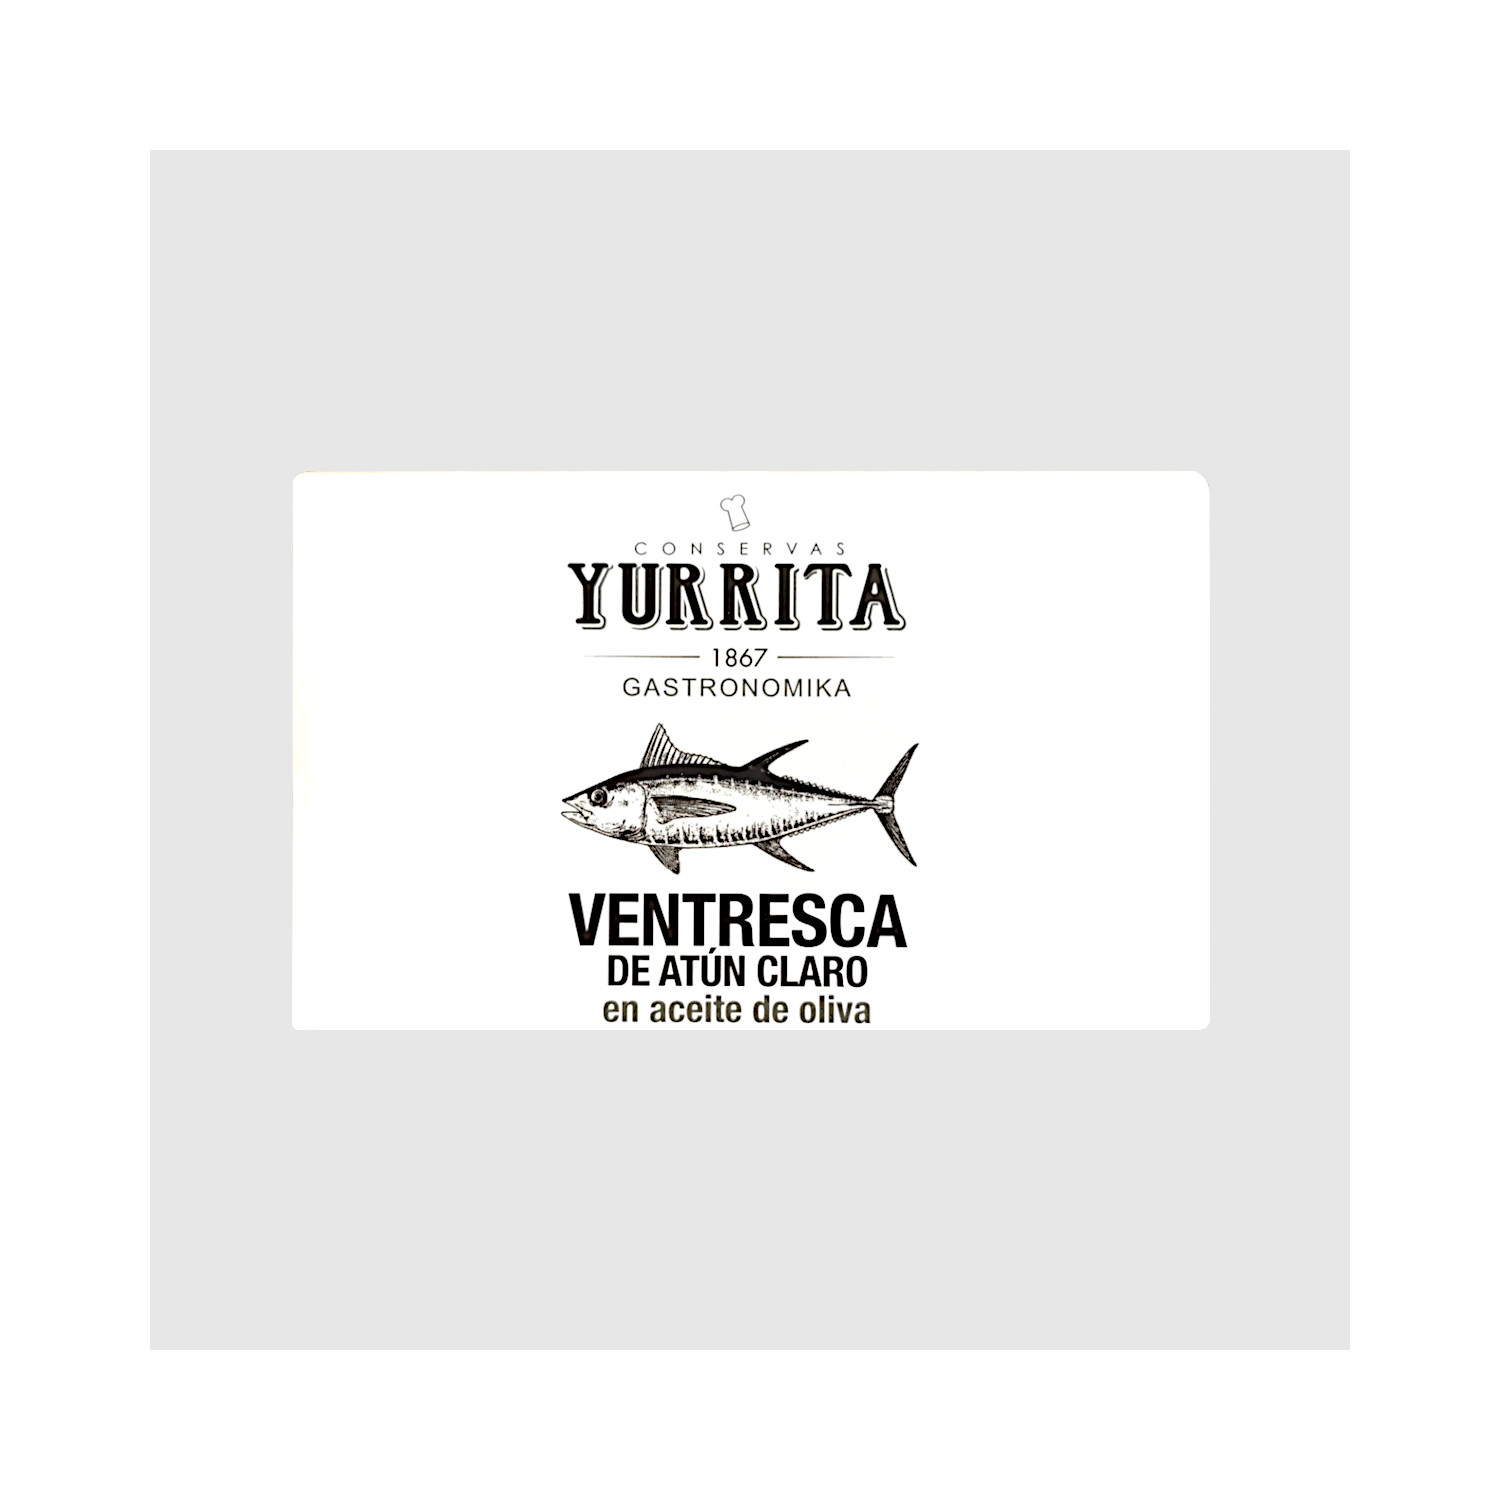 Comprar ventresca de atún claro Yurrita